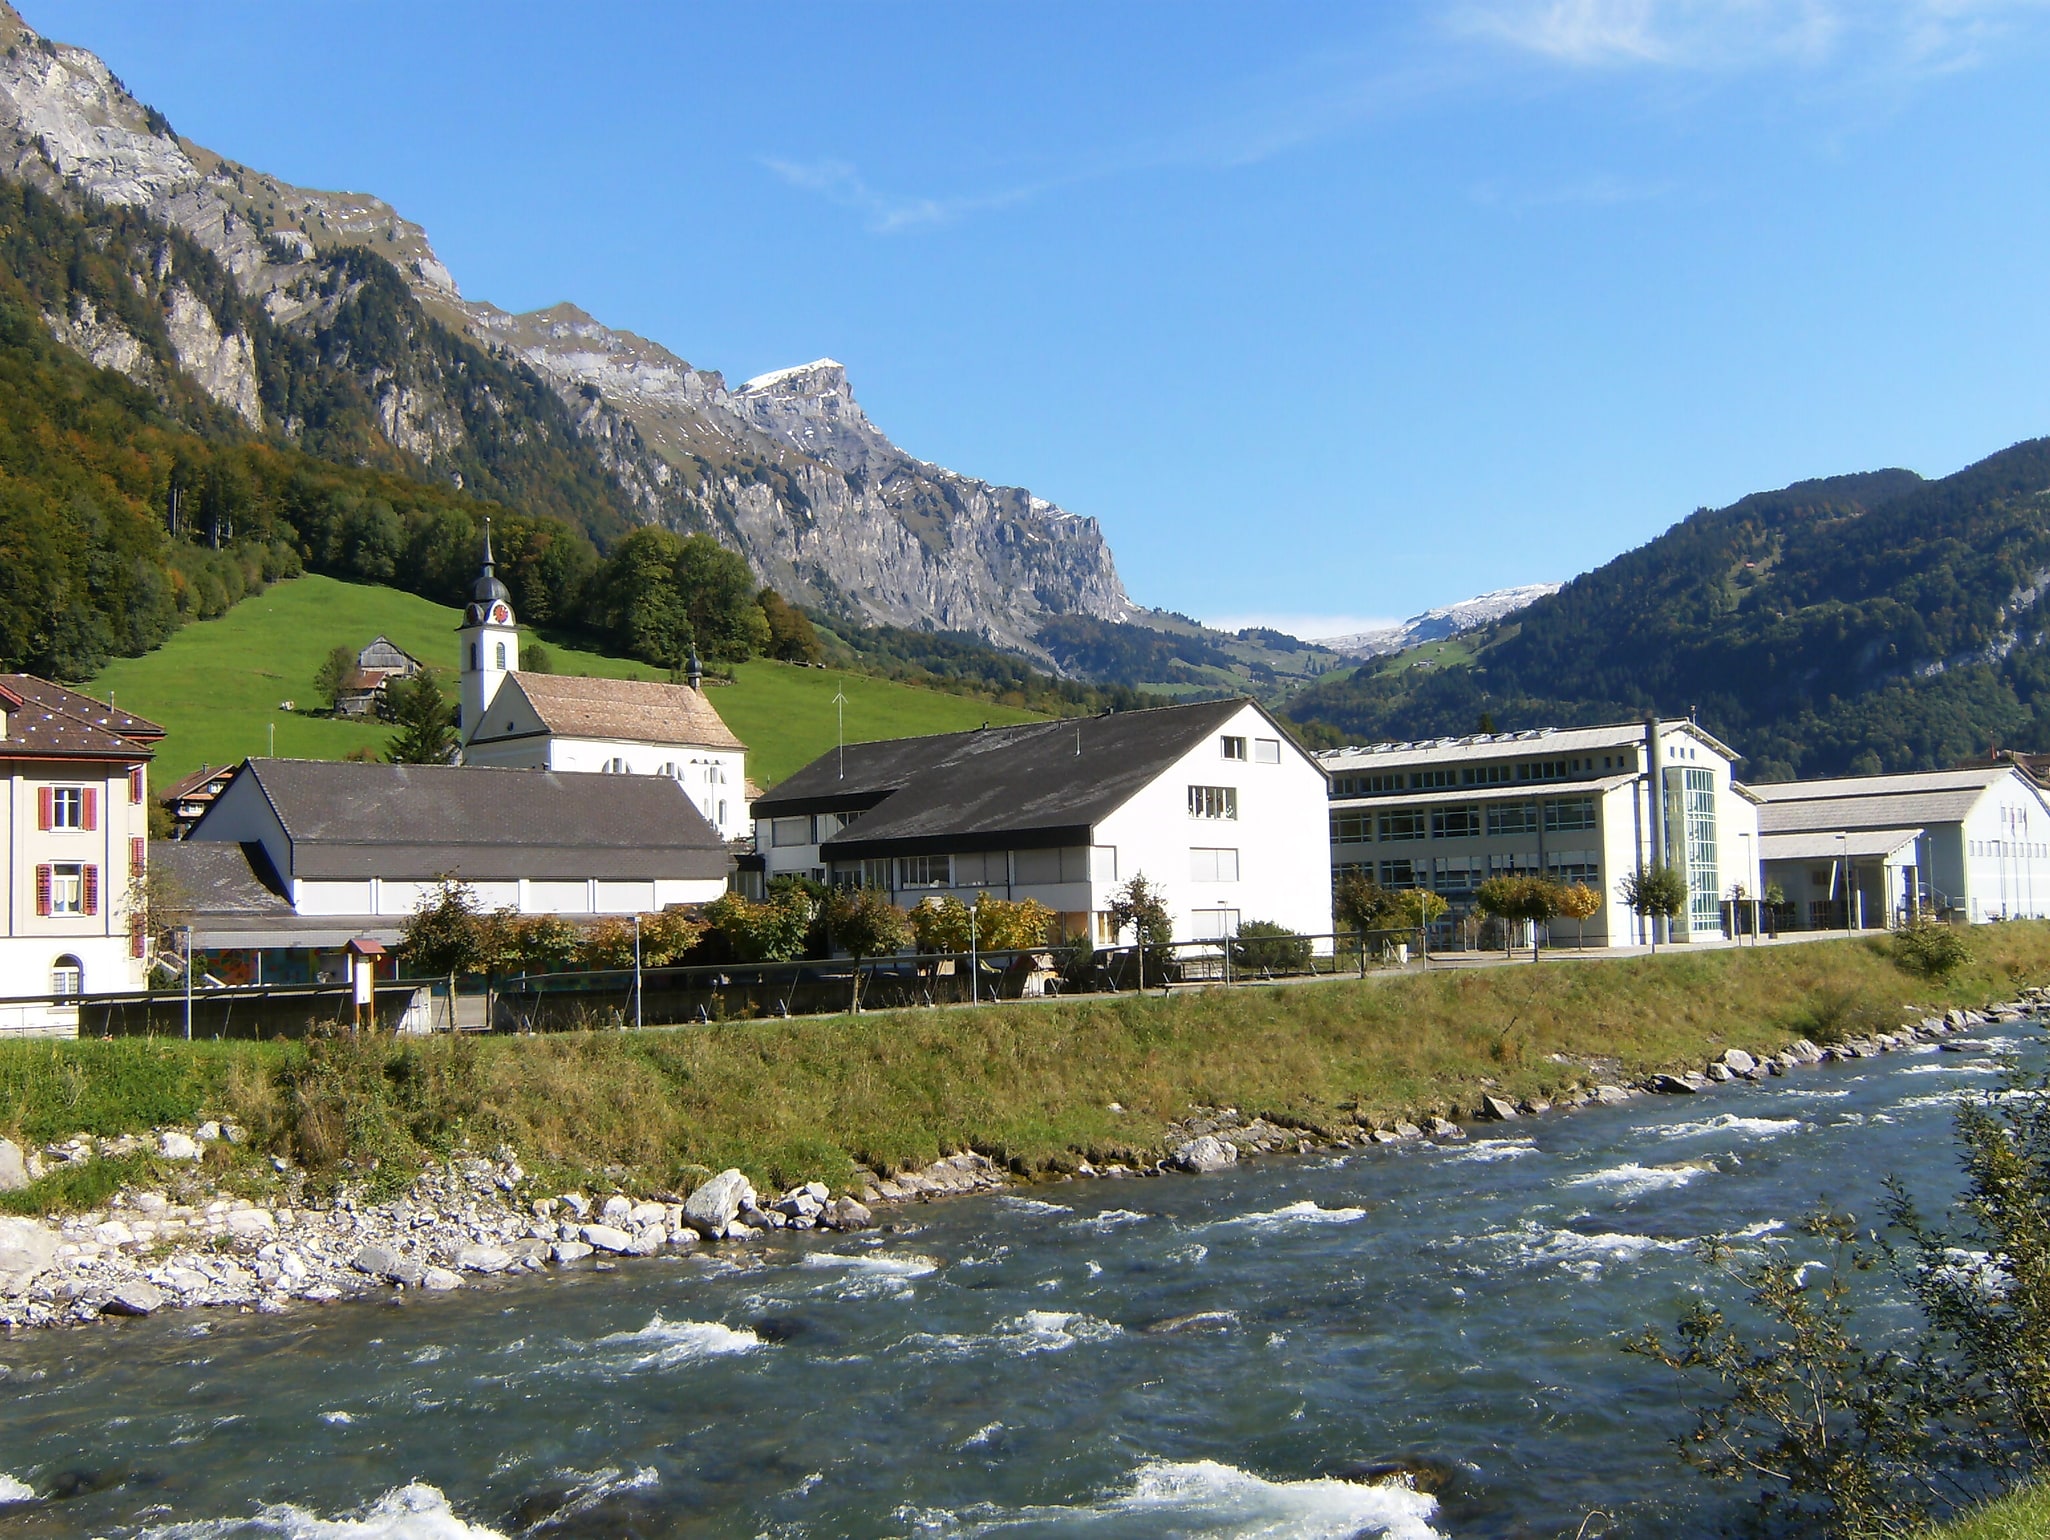 Muotathal, Schweiz